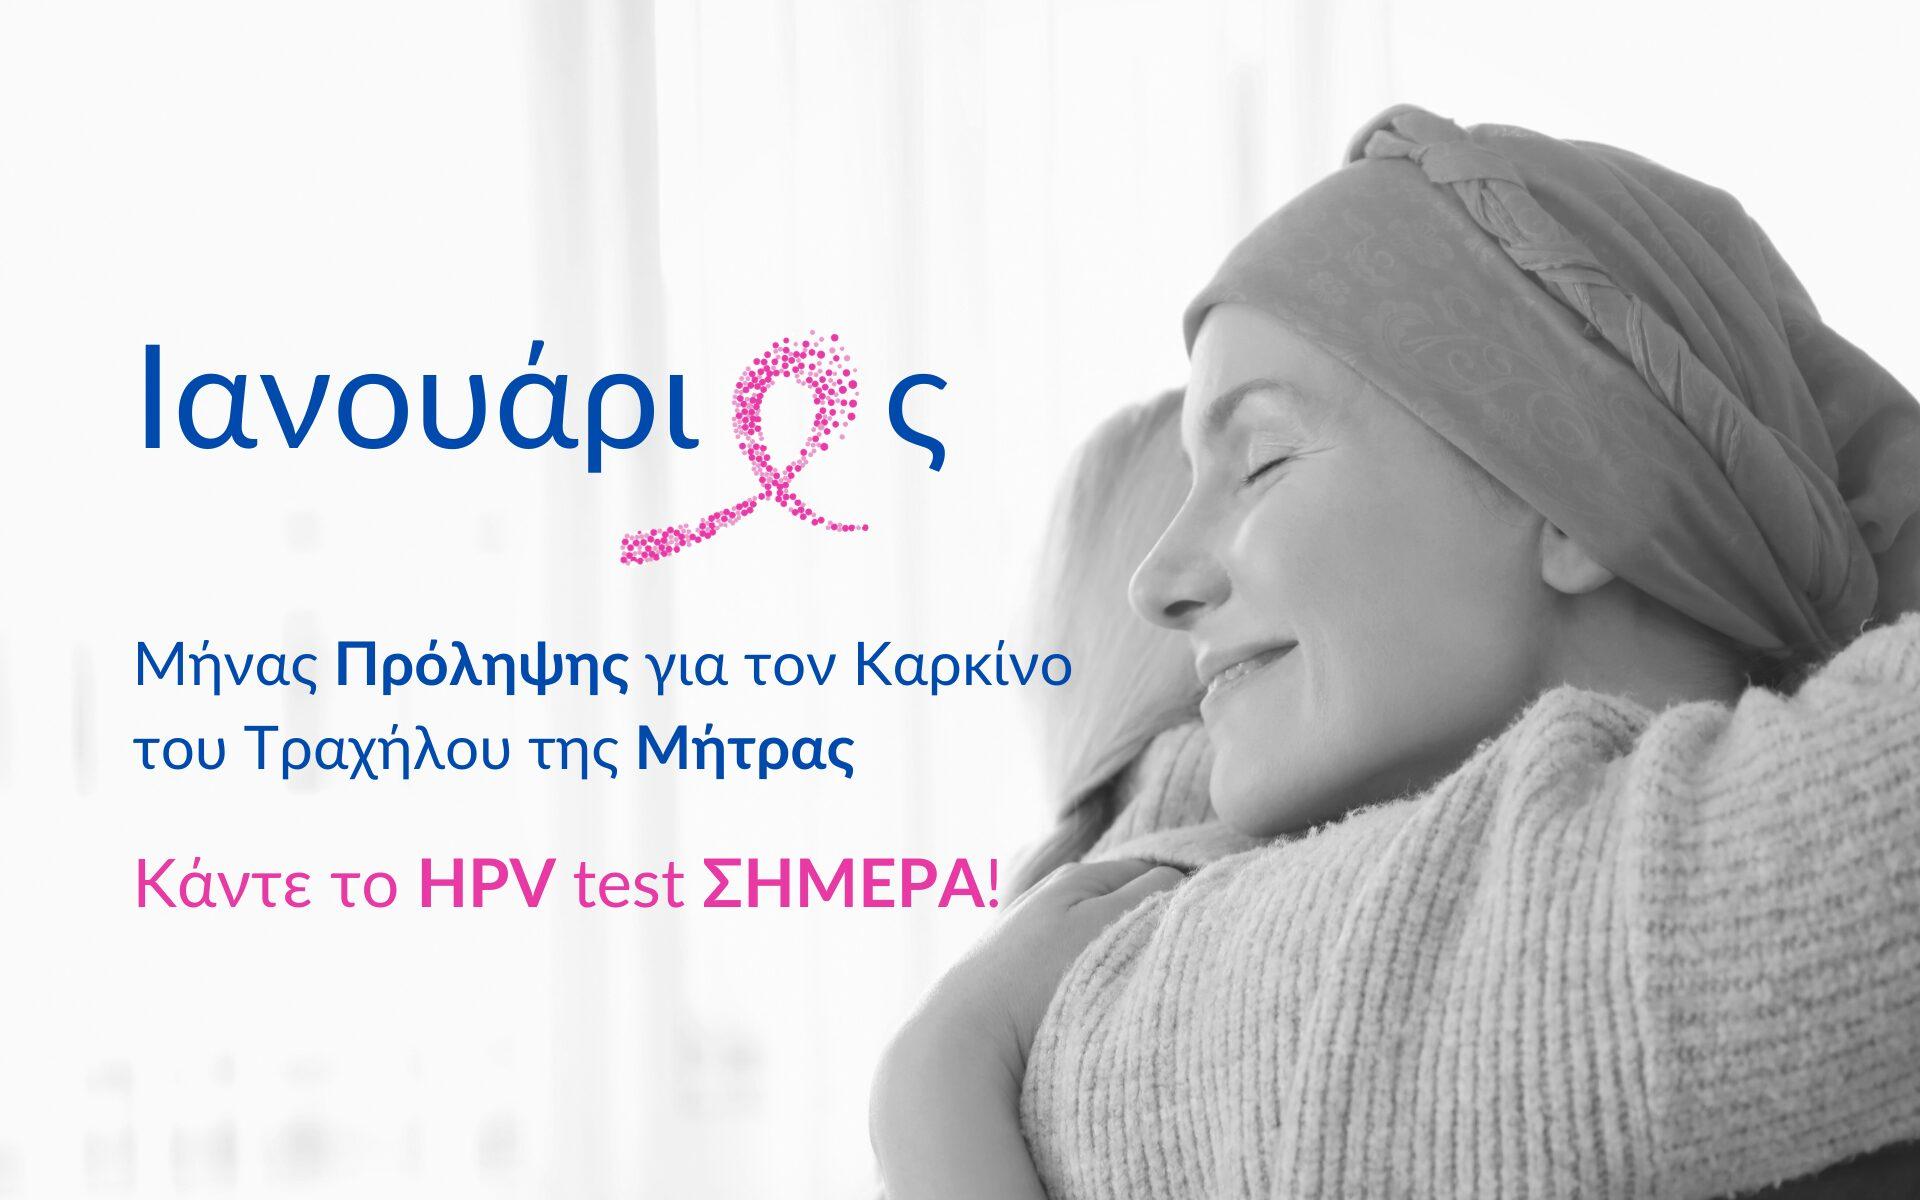 HPV TEST